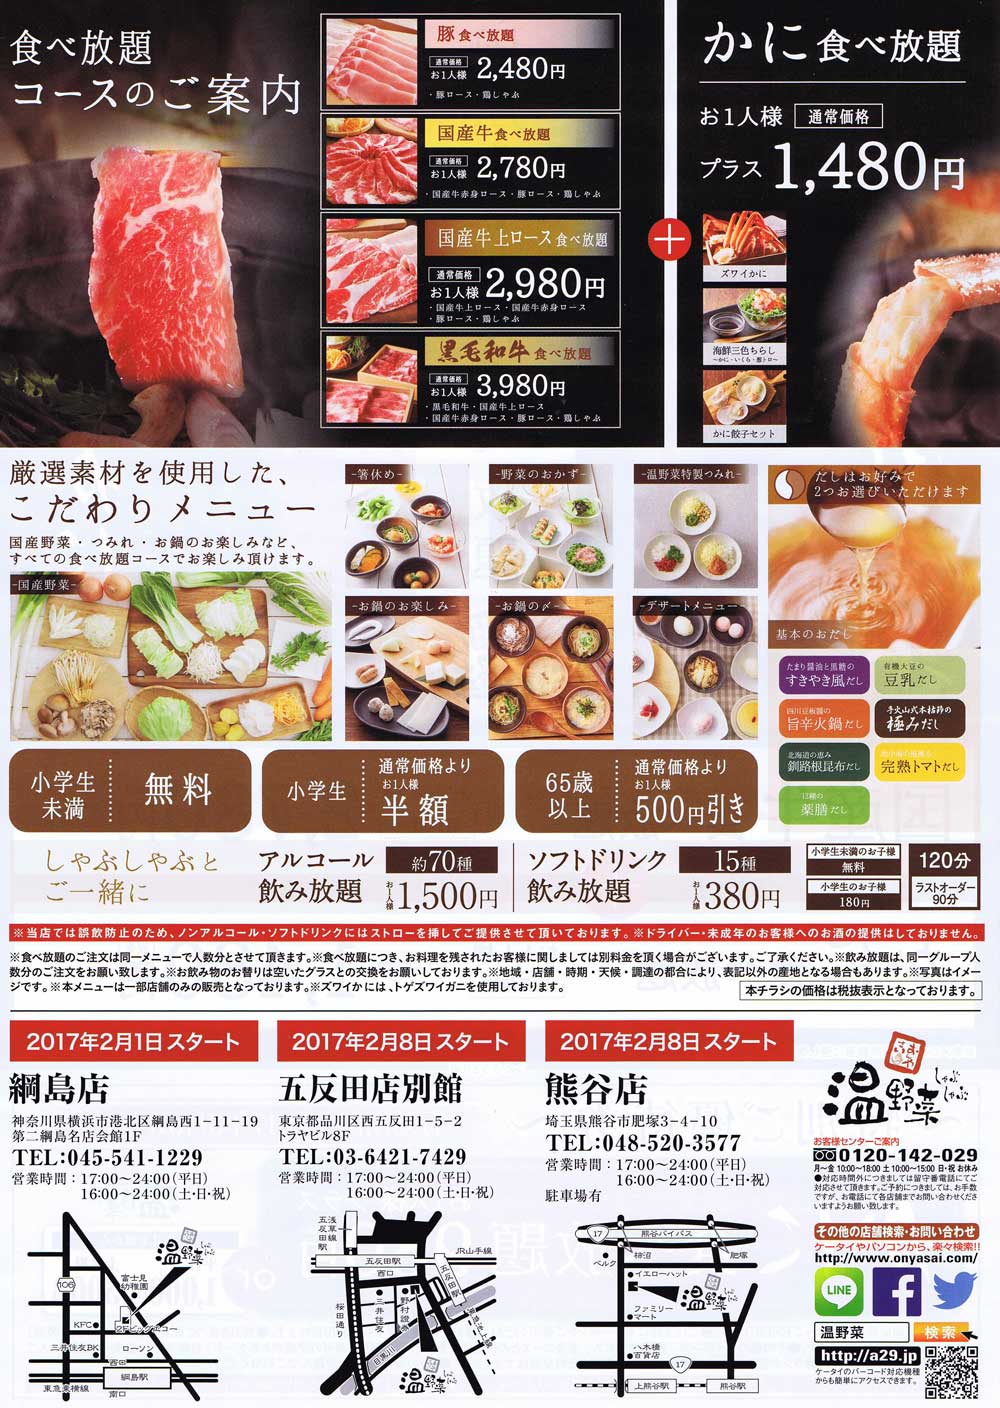 綱島西口の しゃぶしゃぶ温野菜 肉 かに食べ放題メニューを開始 横浜日吉新聞